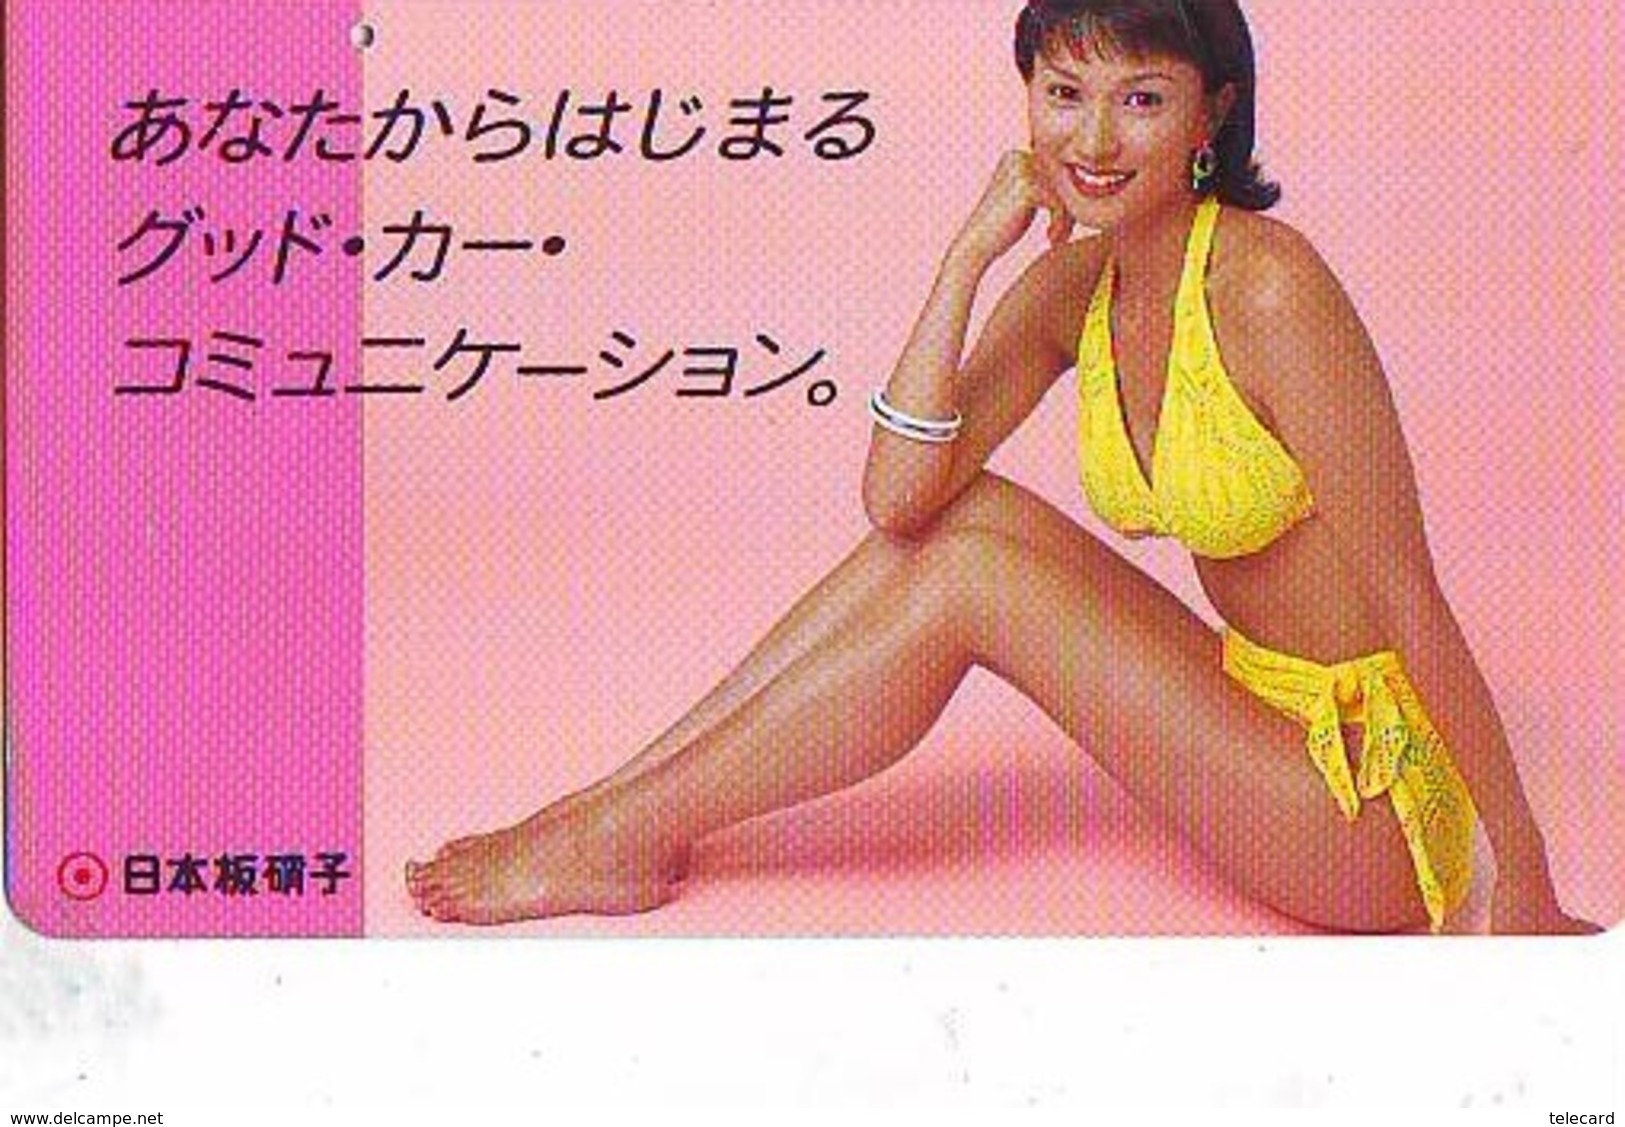 Télécarte Japon * EROTIQUE (6603)    *  EROTIC PHONECARD JAPAN * TK * BATHCLOTHES * FEMME SEXY LADY LINGERIE - Fashion